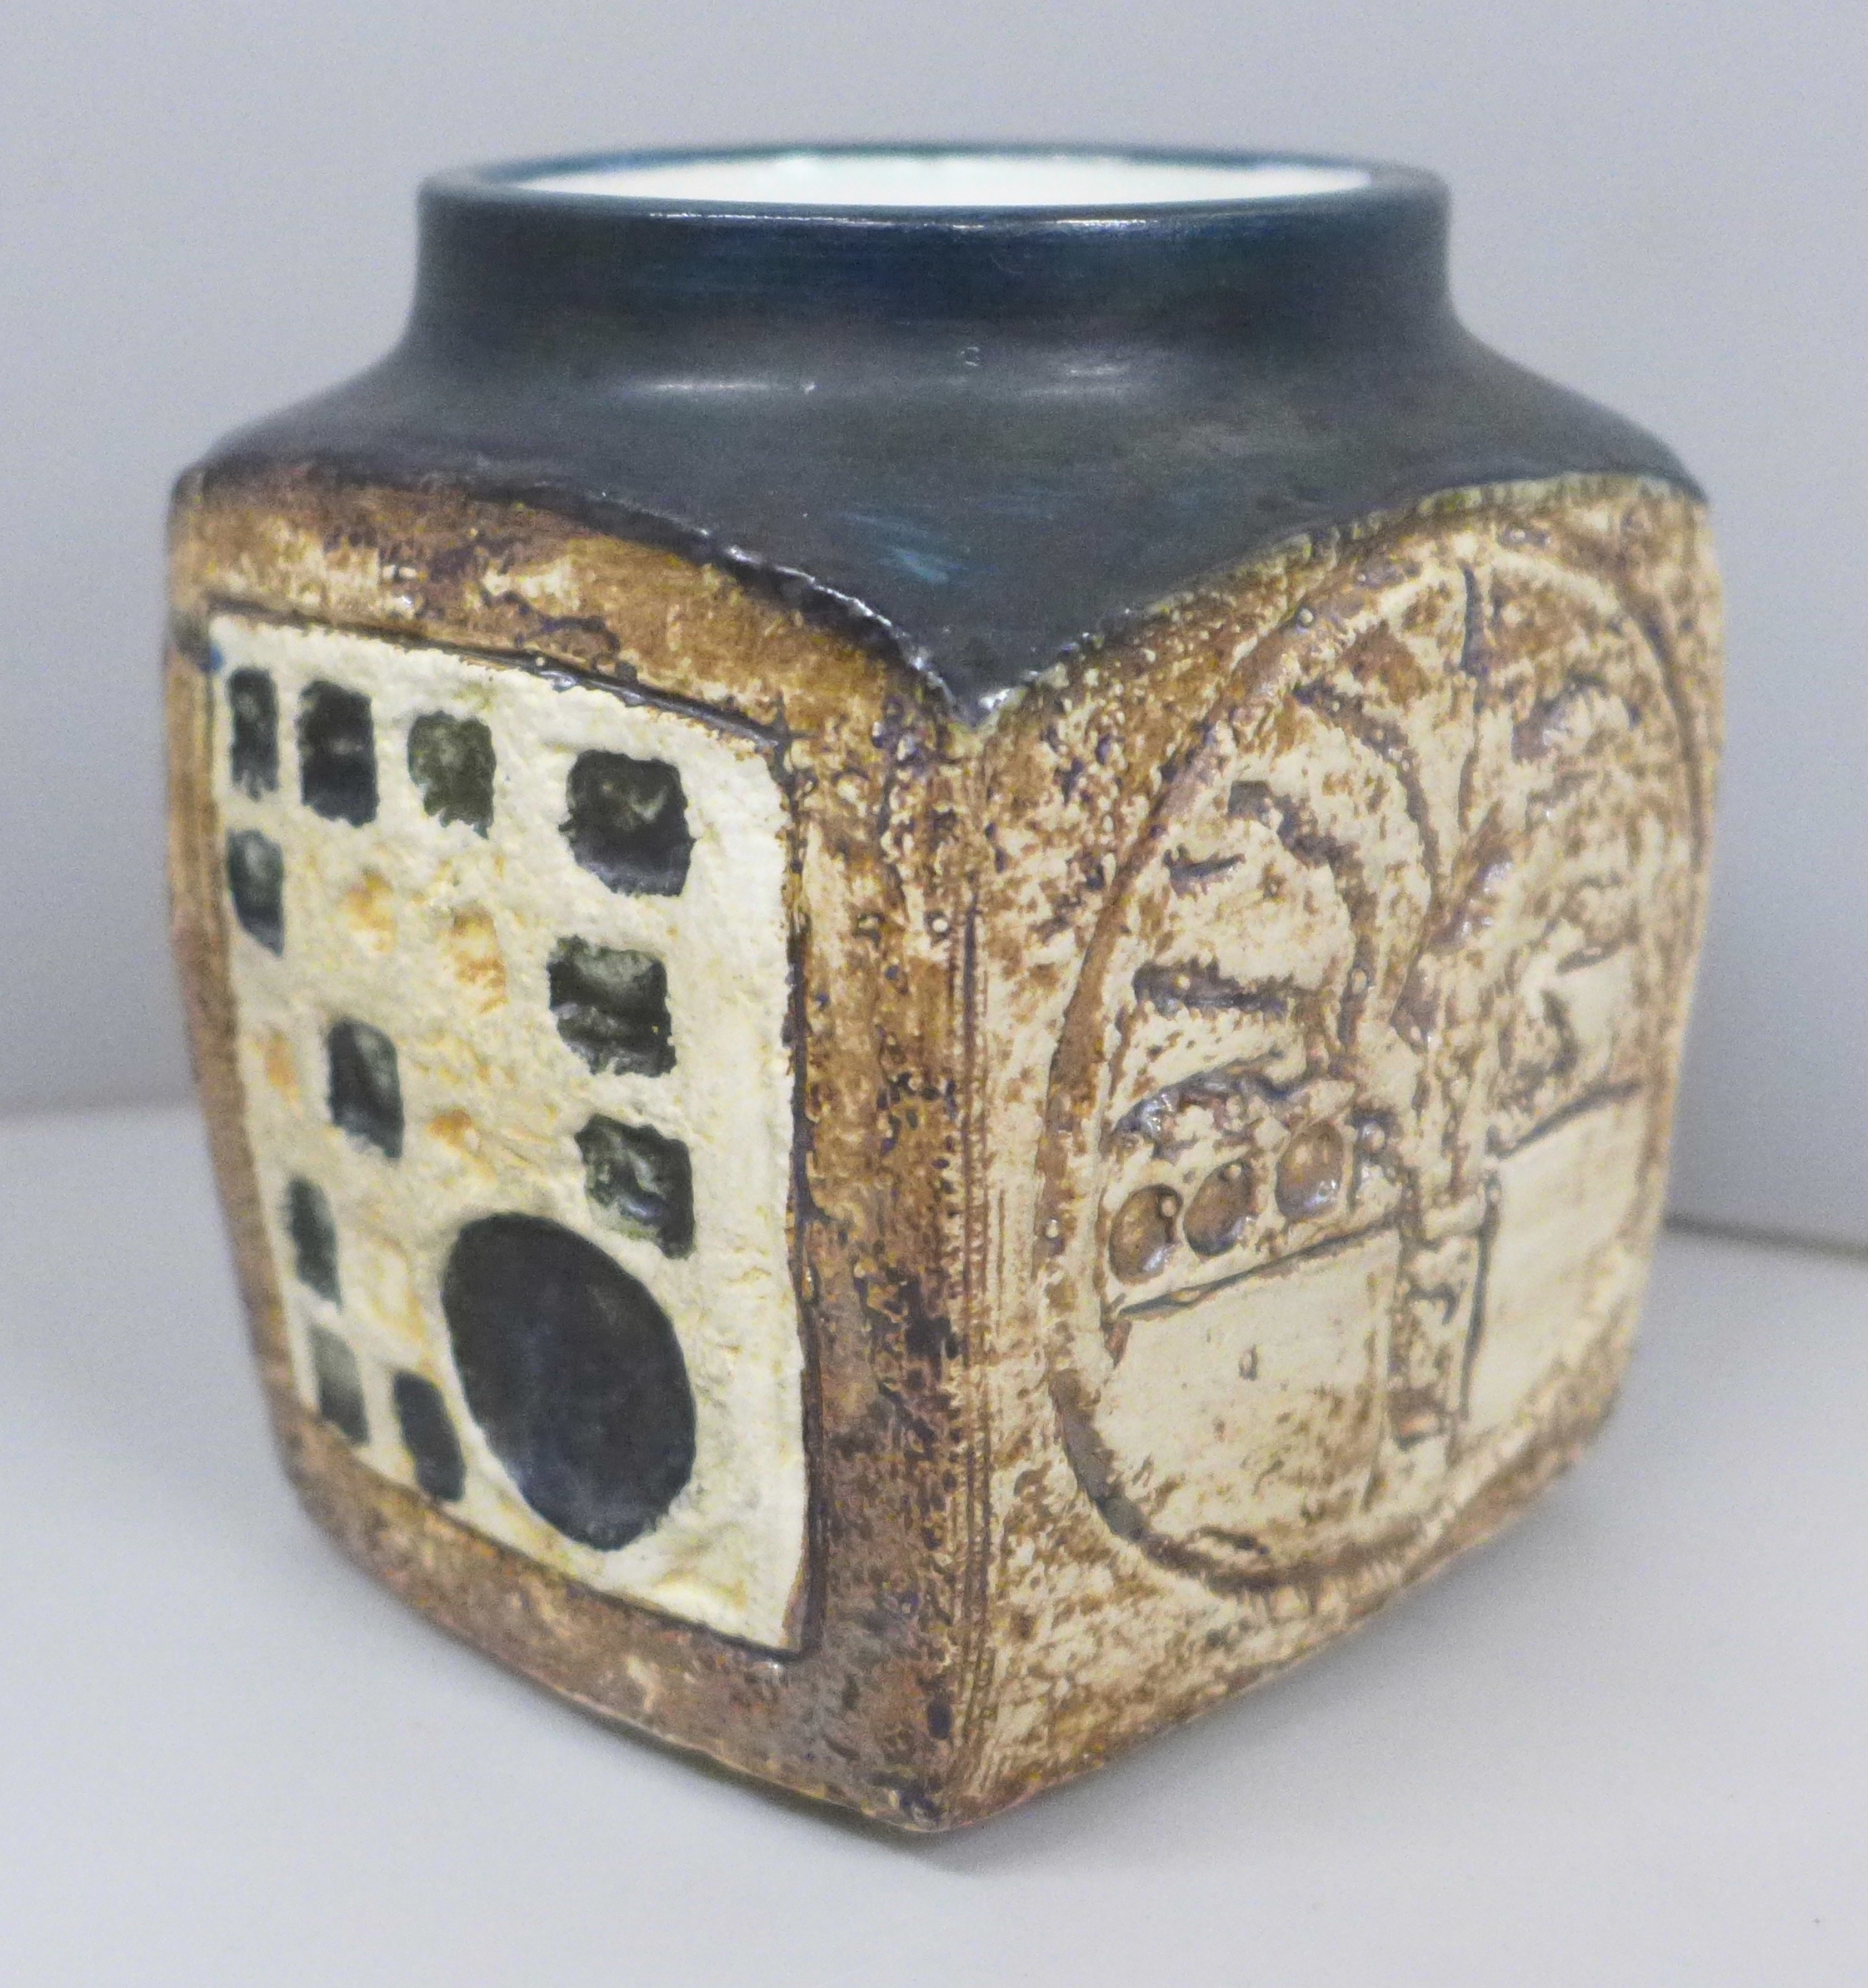 A Troika marmalade jar by Honor Curtis, 10cm